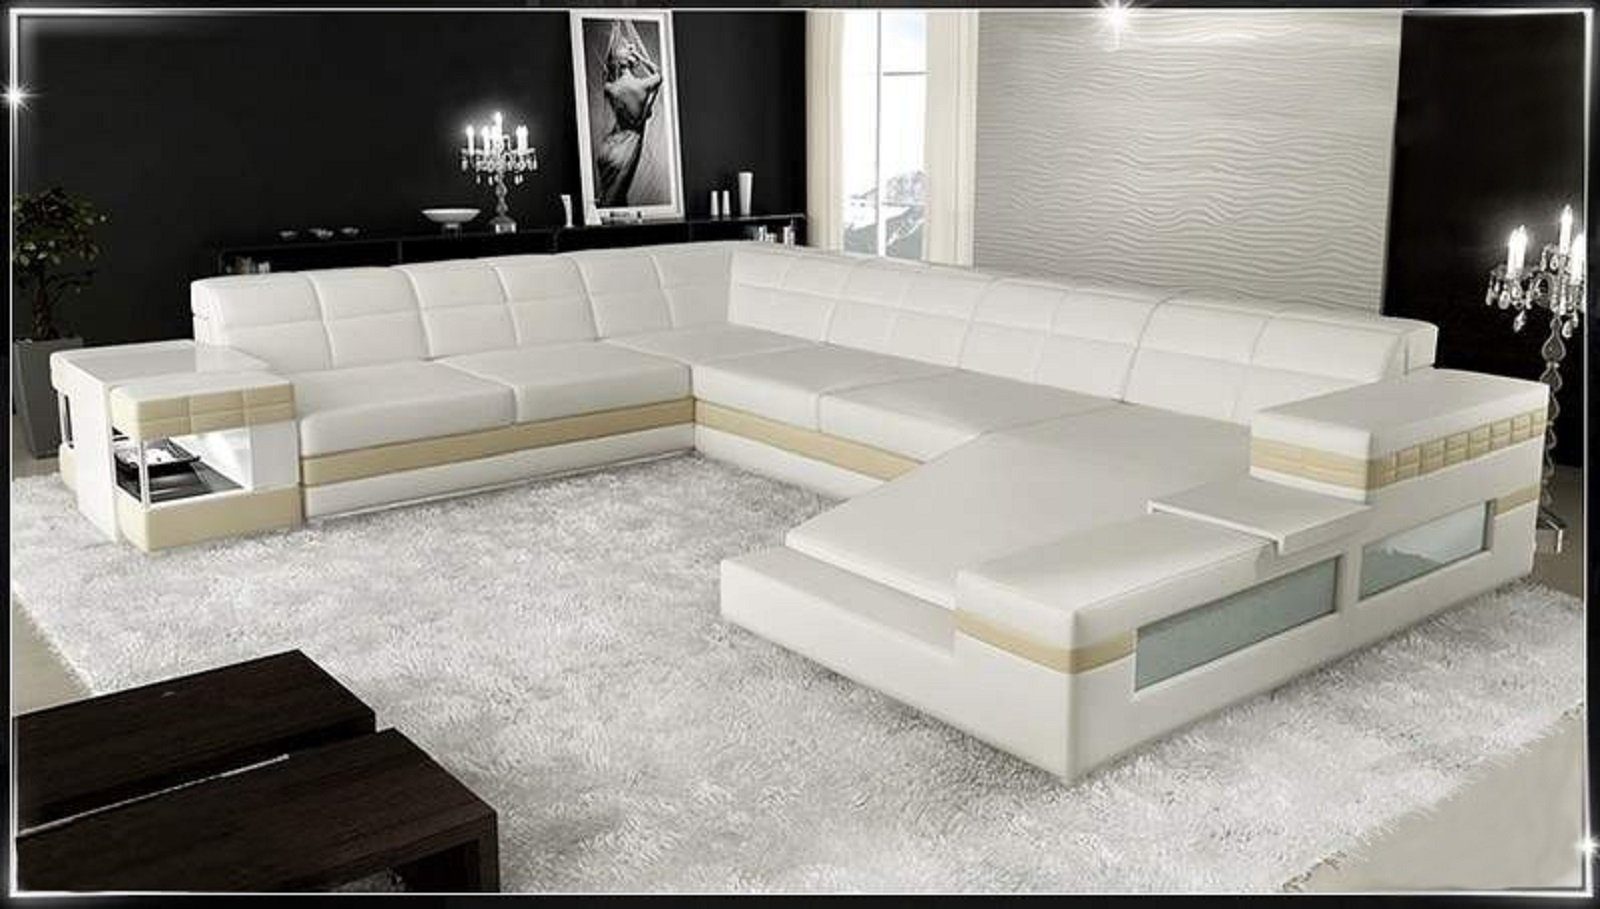 Sofa Couch JVmoebel Ledersofa Made Sofa, in Ecksofa Design Polster Ecksofa Weiß/Beige Europe Eckgarnitur